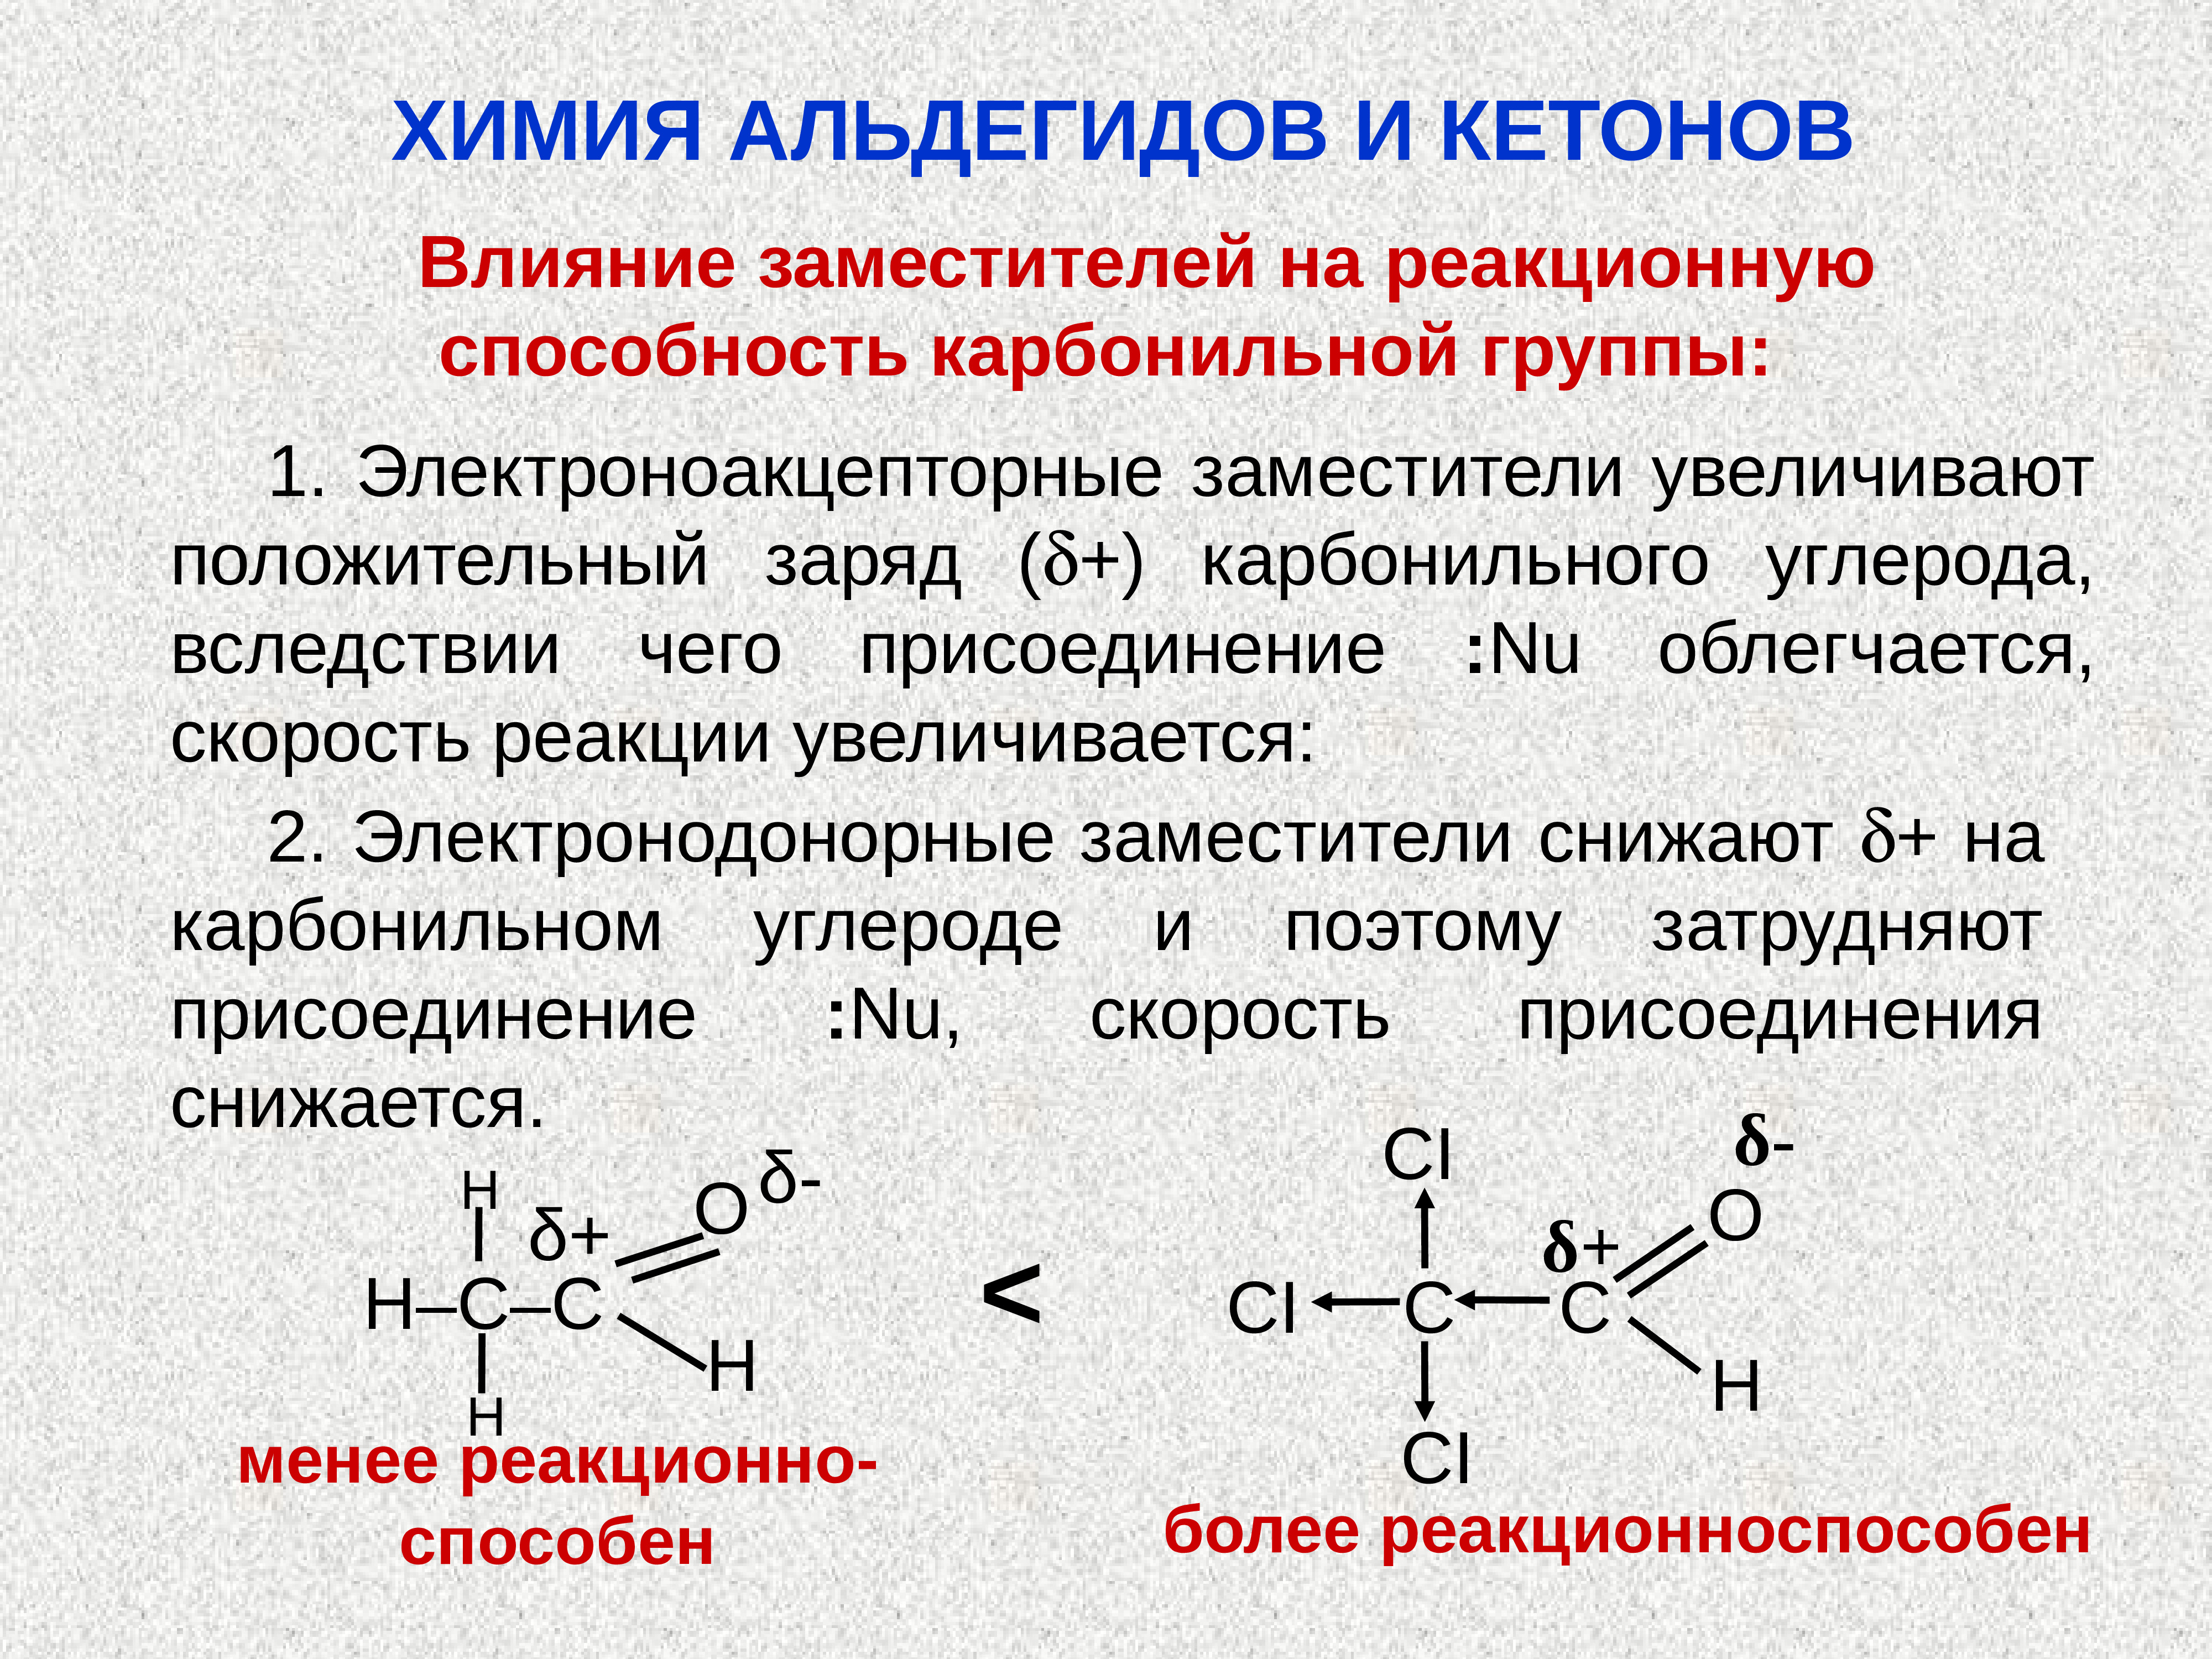 1 альдегидная группа. Влияние радикала на реакционную способность карбонильной группы.. Альдегиды и кетоны строение. Электронное строение альдегидов и кетонов. Строение карбонильной группы кетонов.